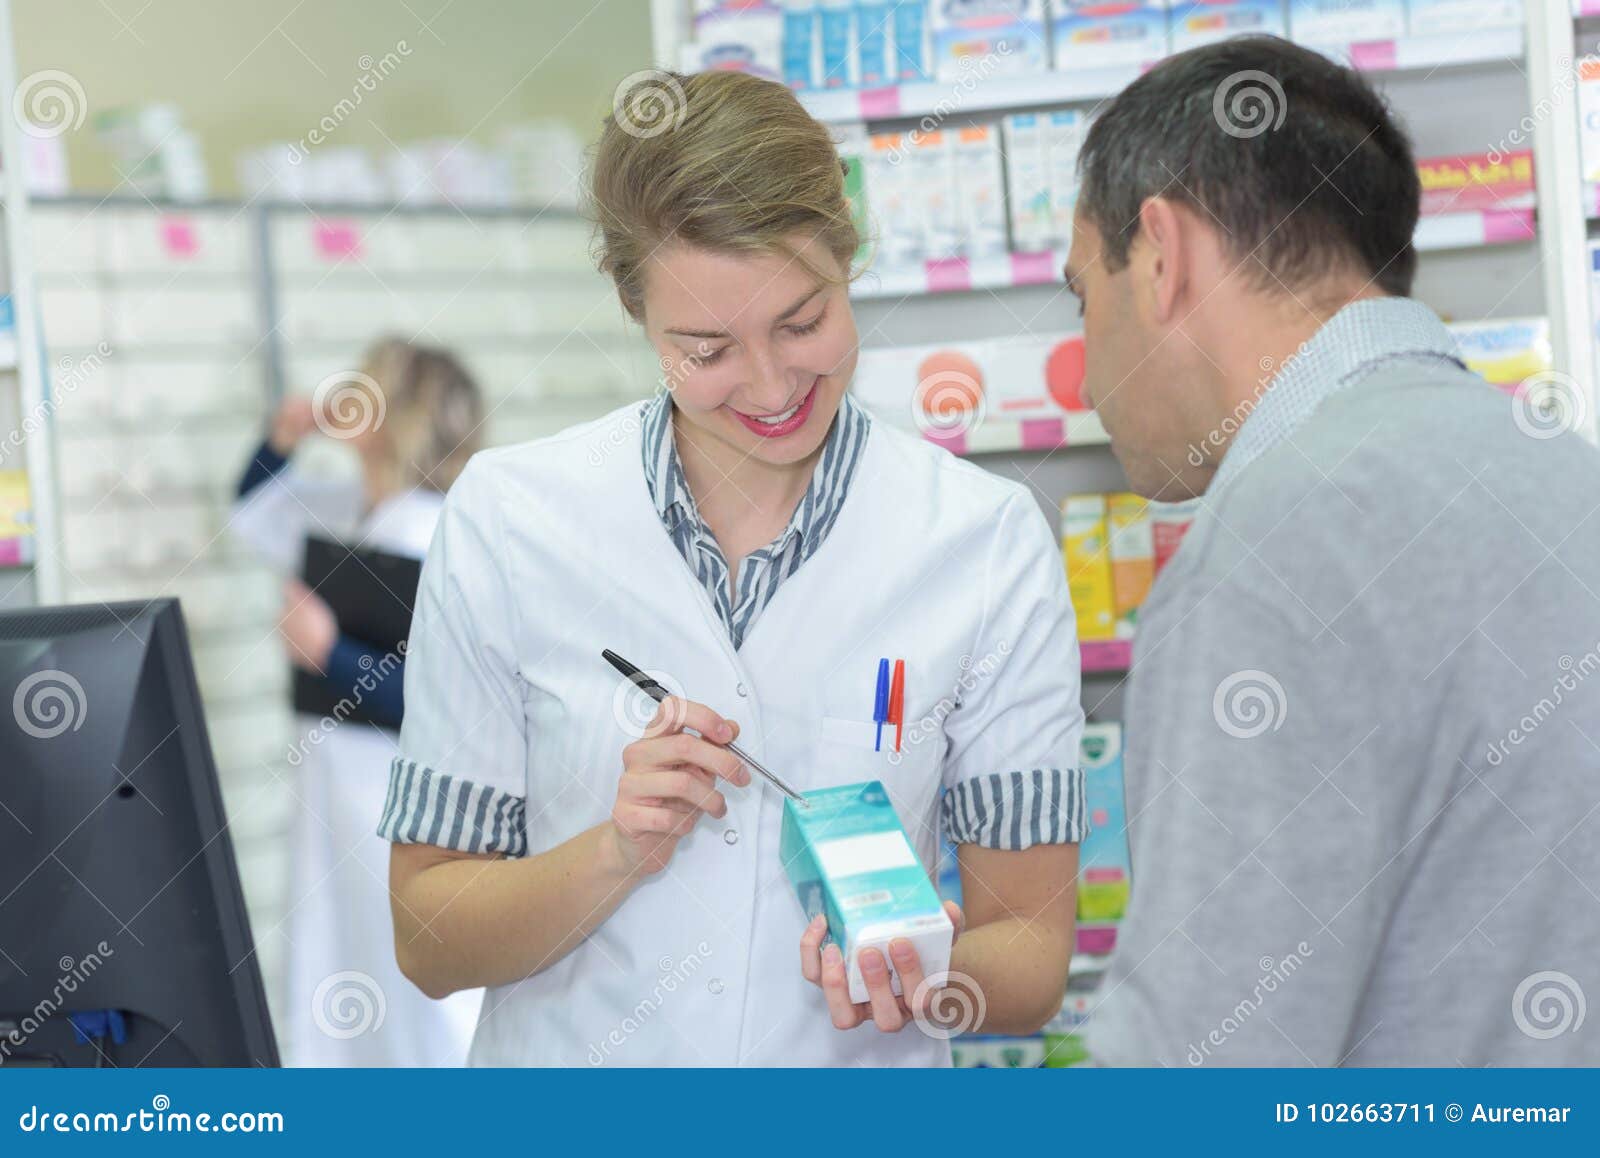 pharmacist writing dosage on box